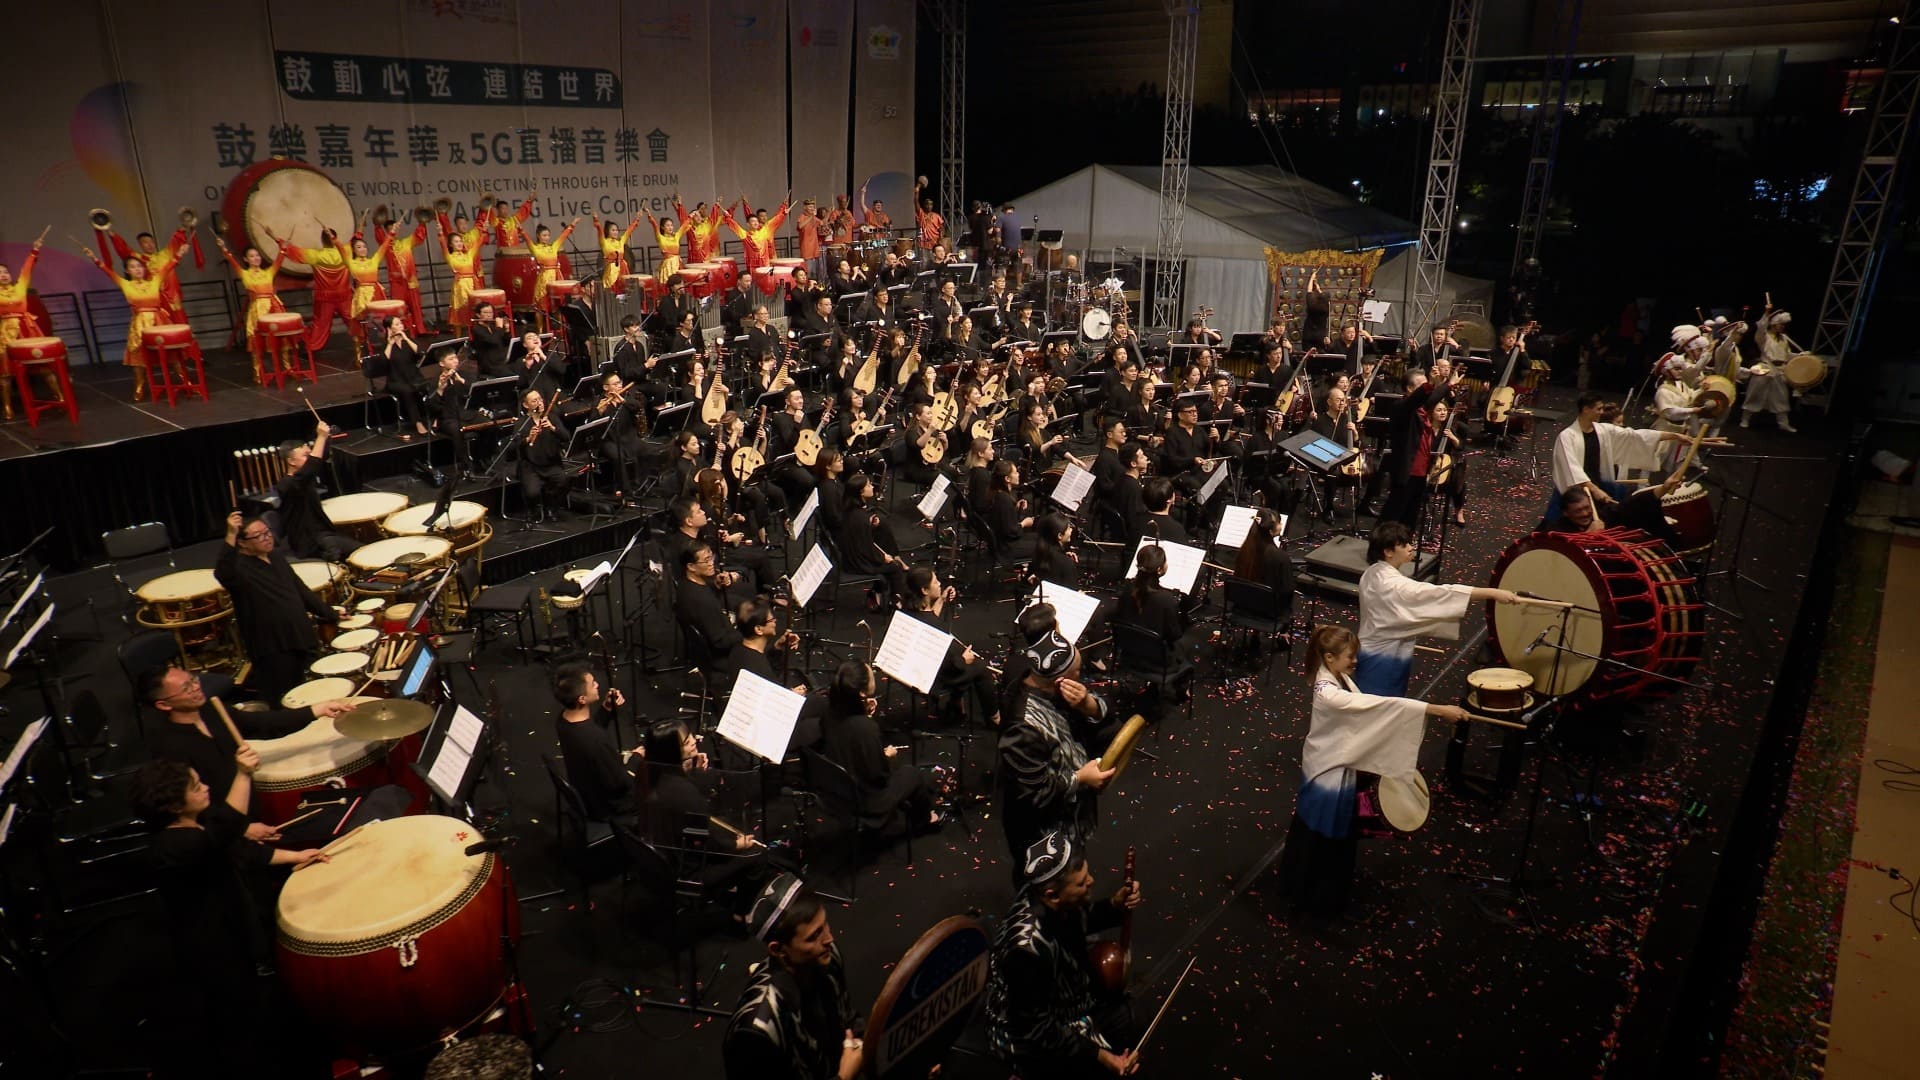 由香港中乐团举办的鼓乐节，踏入二十周年。今年鼓乐节主题「鼓动心弦，连结世界」，邀请了世界顶尖级鼓乐音乐家同团队。